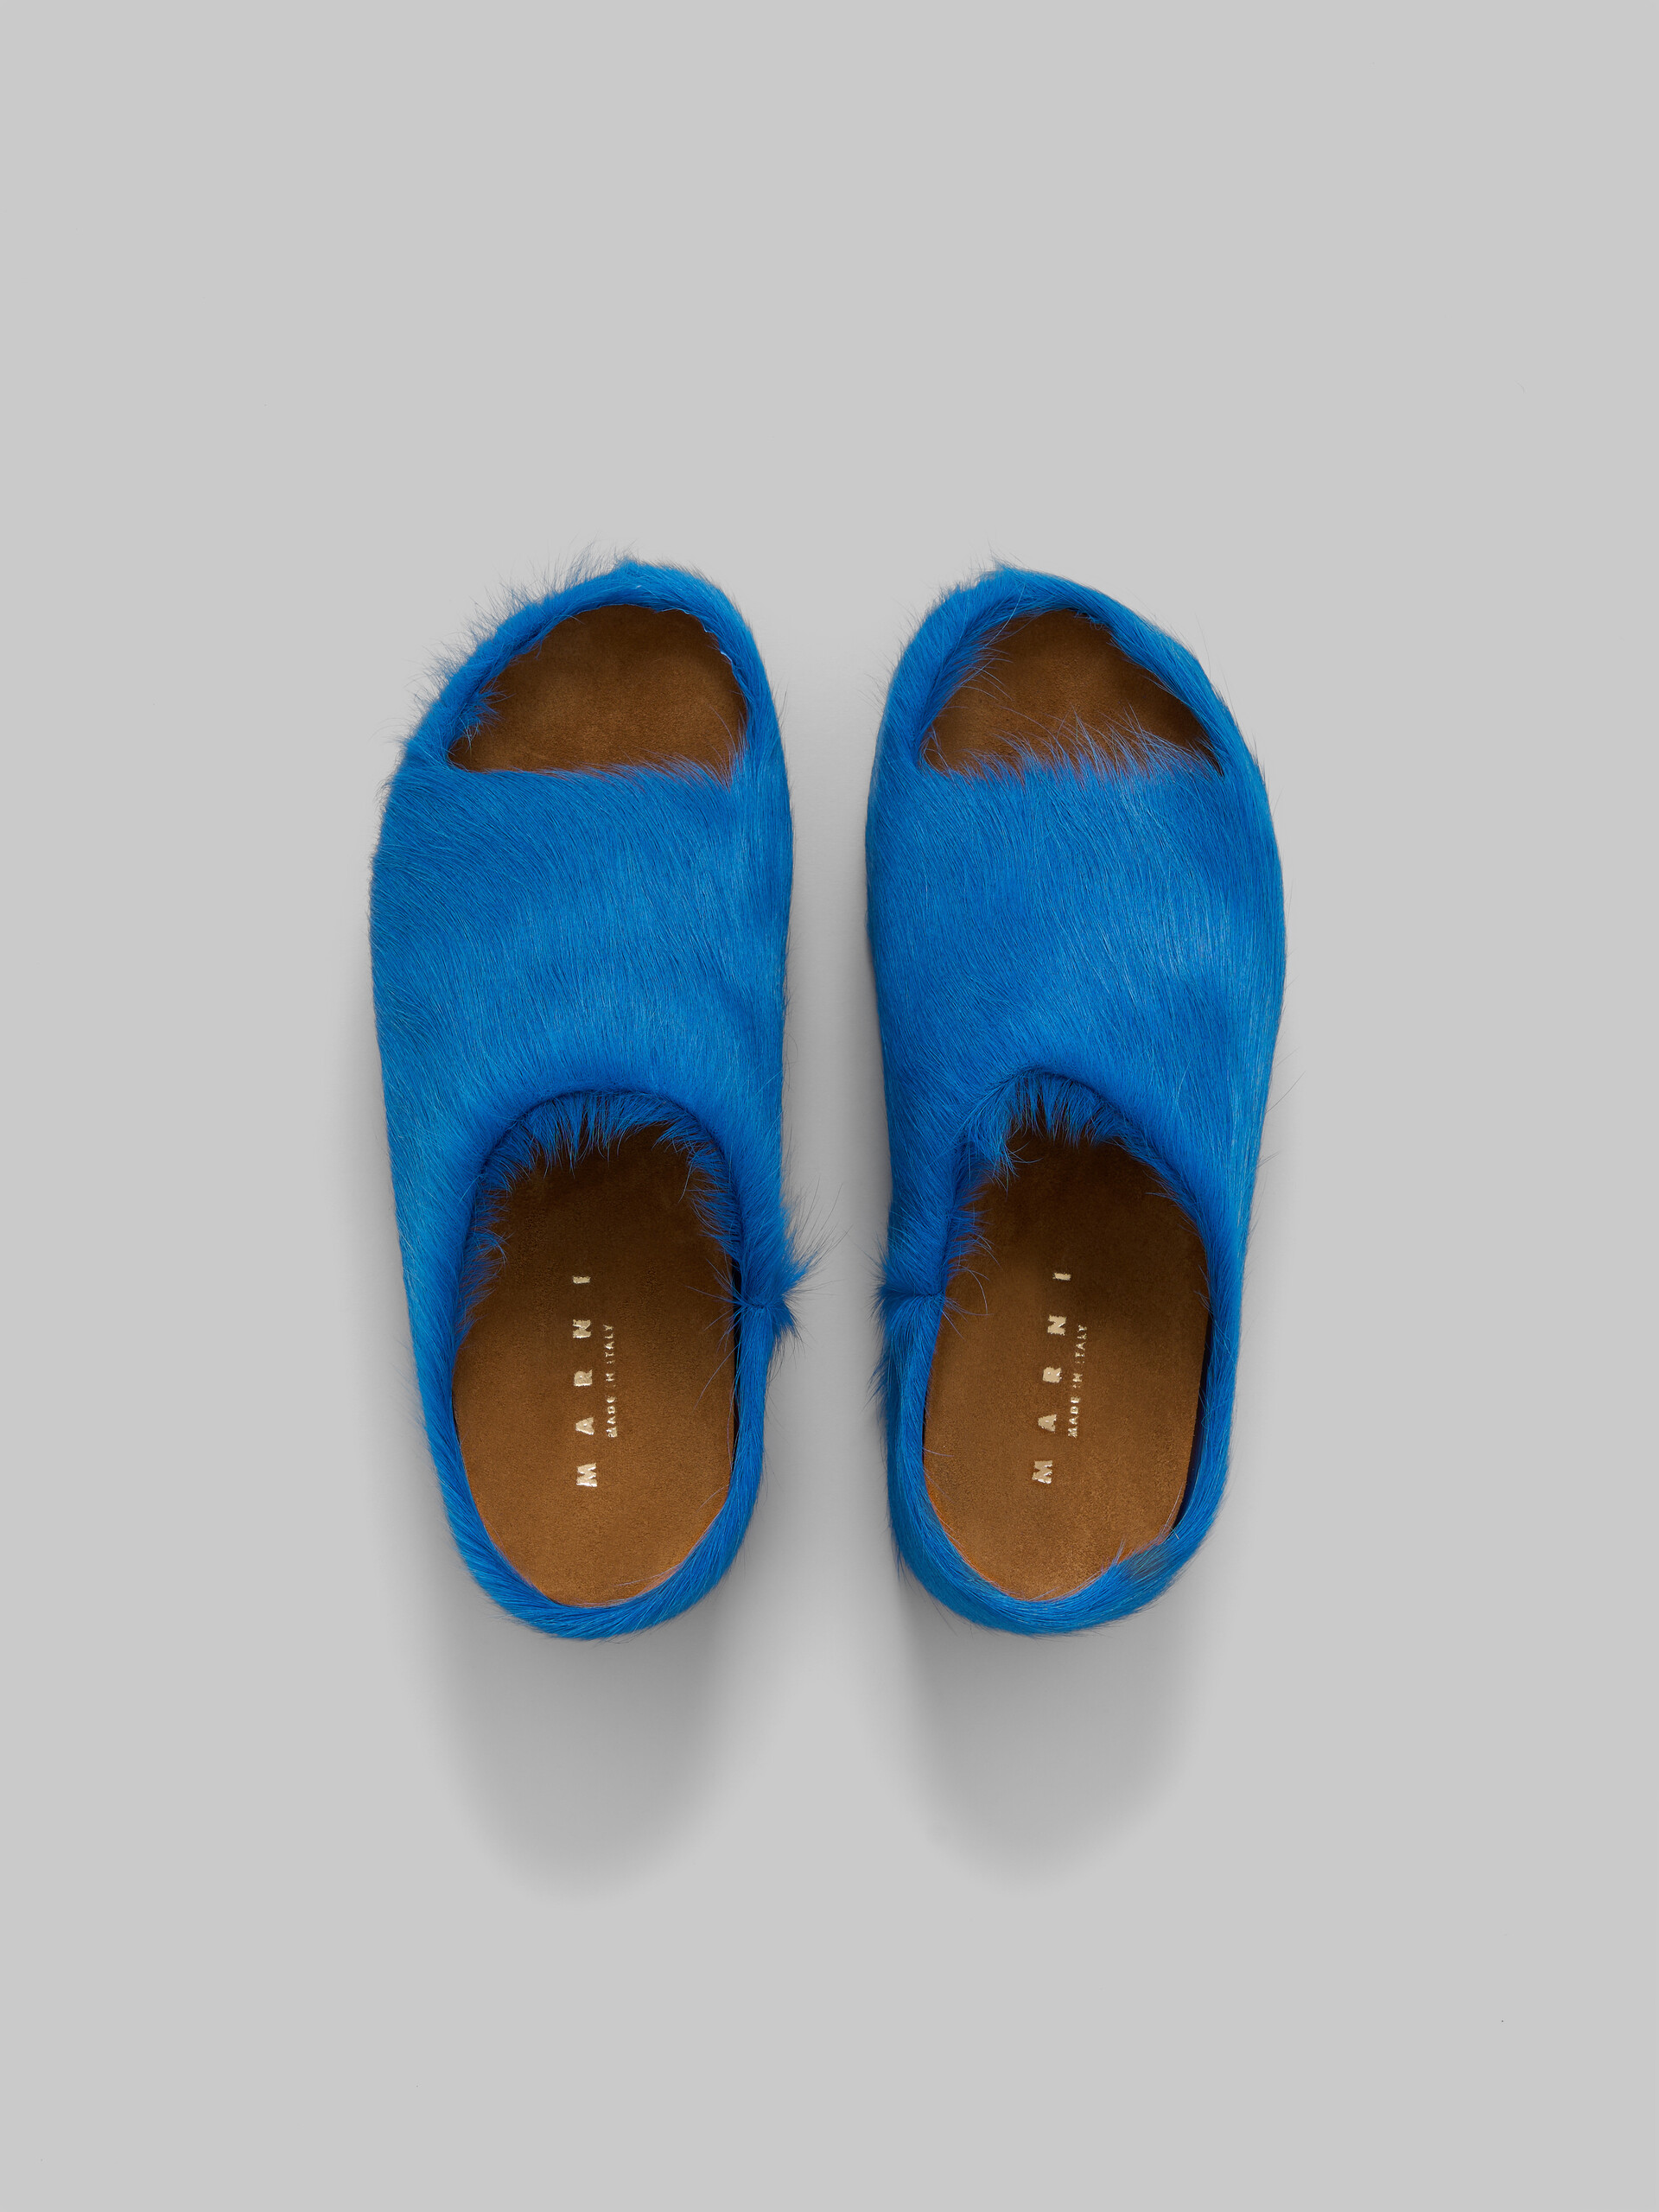 Mules sabots bleues épaisses en cuir de veau à poils longs - Sandales - Image 4